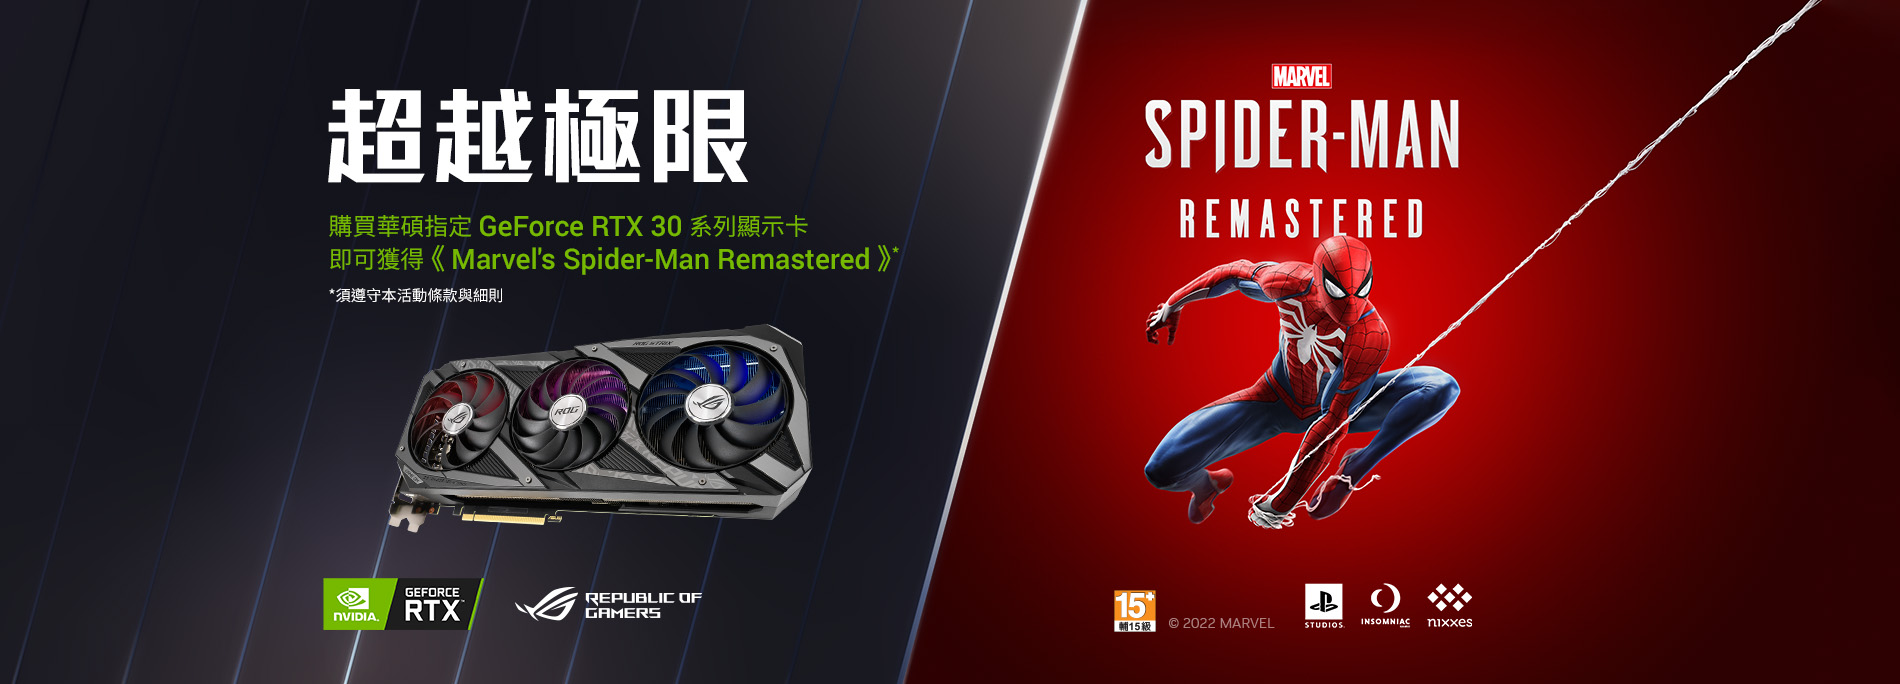 【超越極限】購買華碩指定 GeForce RTX 30系列顯示卡，即可獲得《Marvel's Spider-Man Remastered》。(數量有限，送完為止)